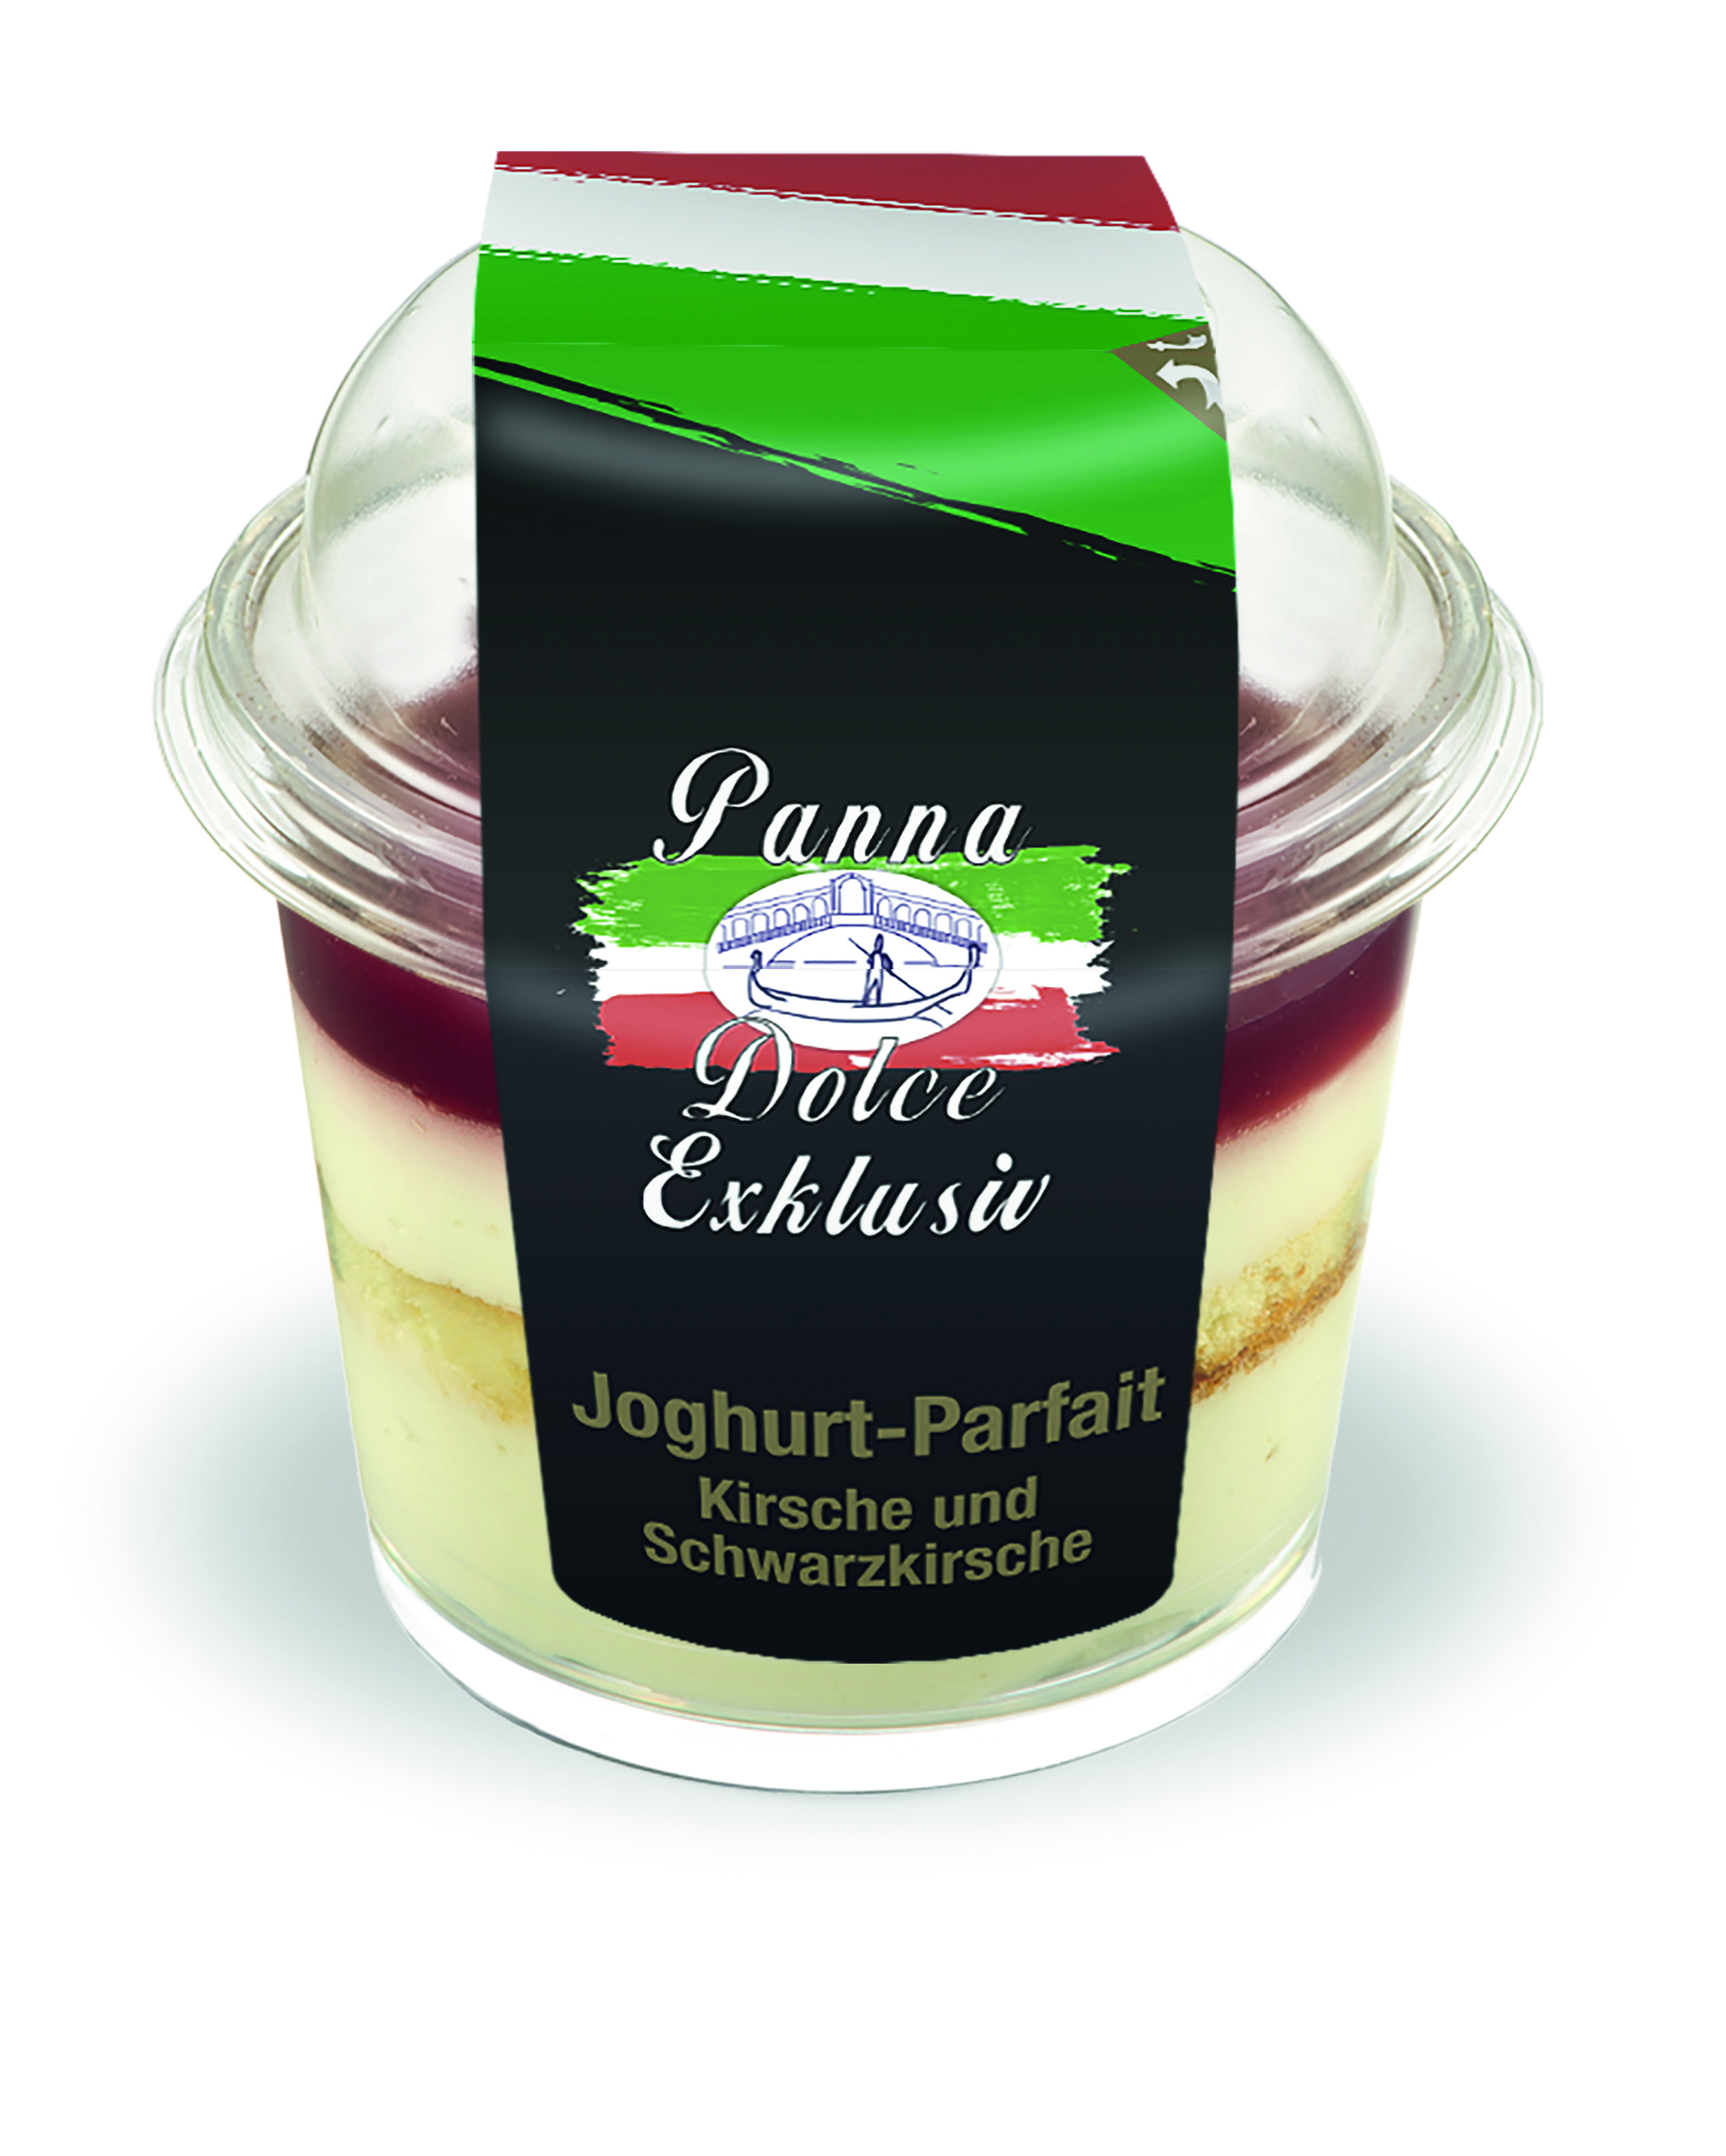 256 Panna & Dolce Exklusiv Joghurt-Parfait Kirsche und Schwarzkirsche 60g